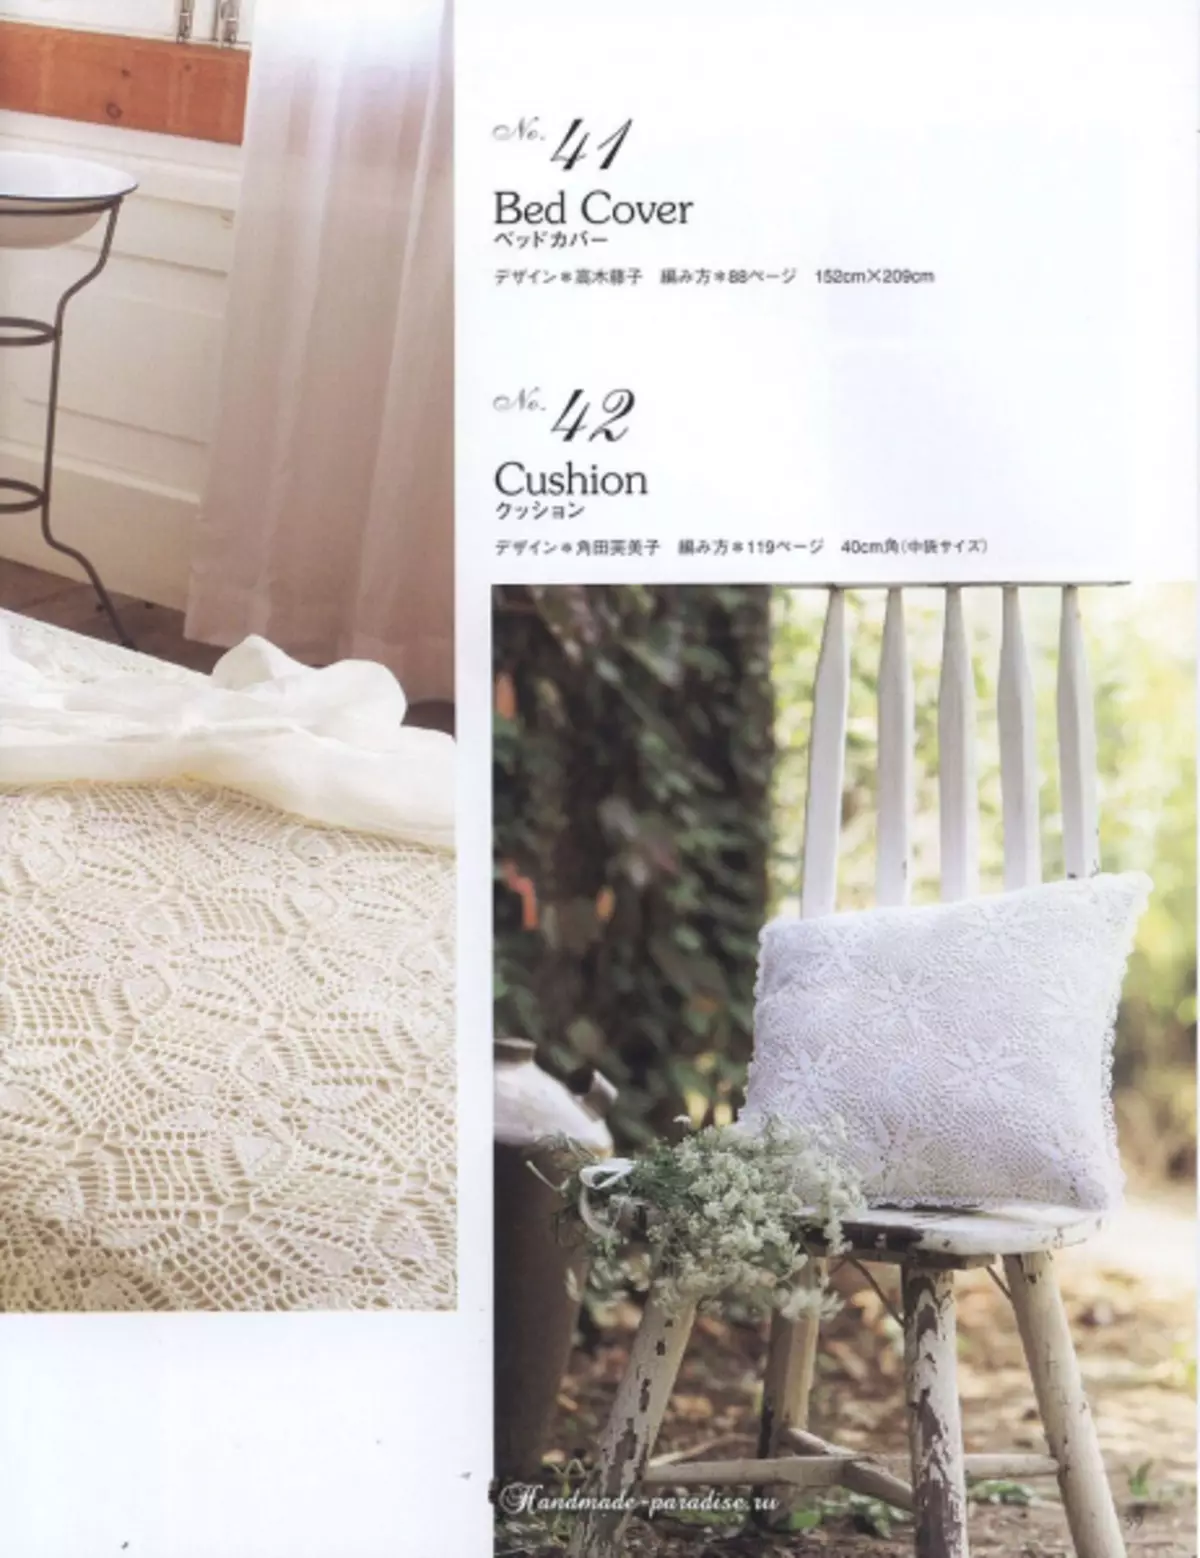 Elegants Crochet Lace 2019 Žurnāls - salvetes un tamborēšanas galdauti